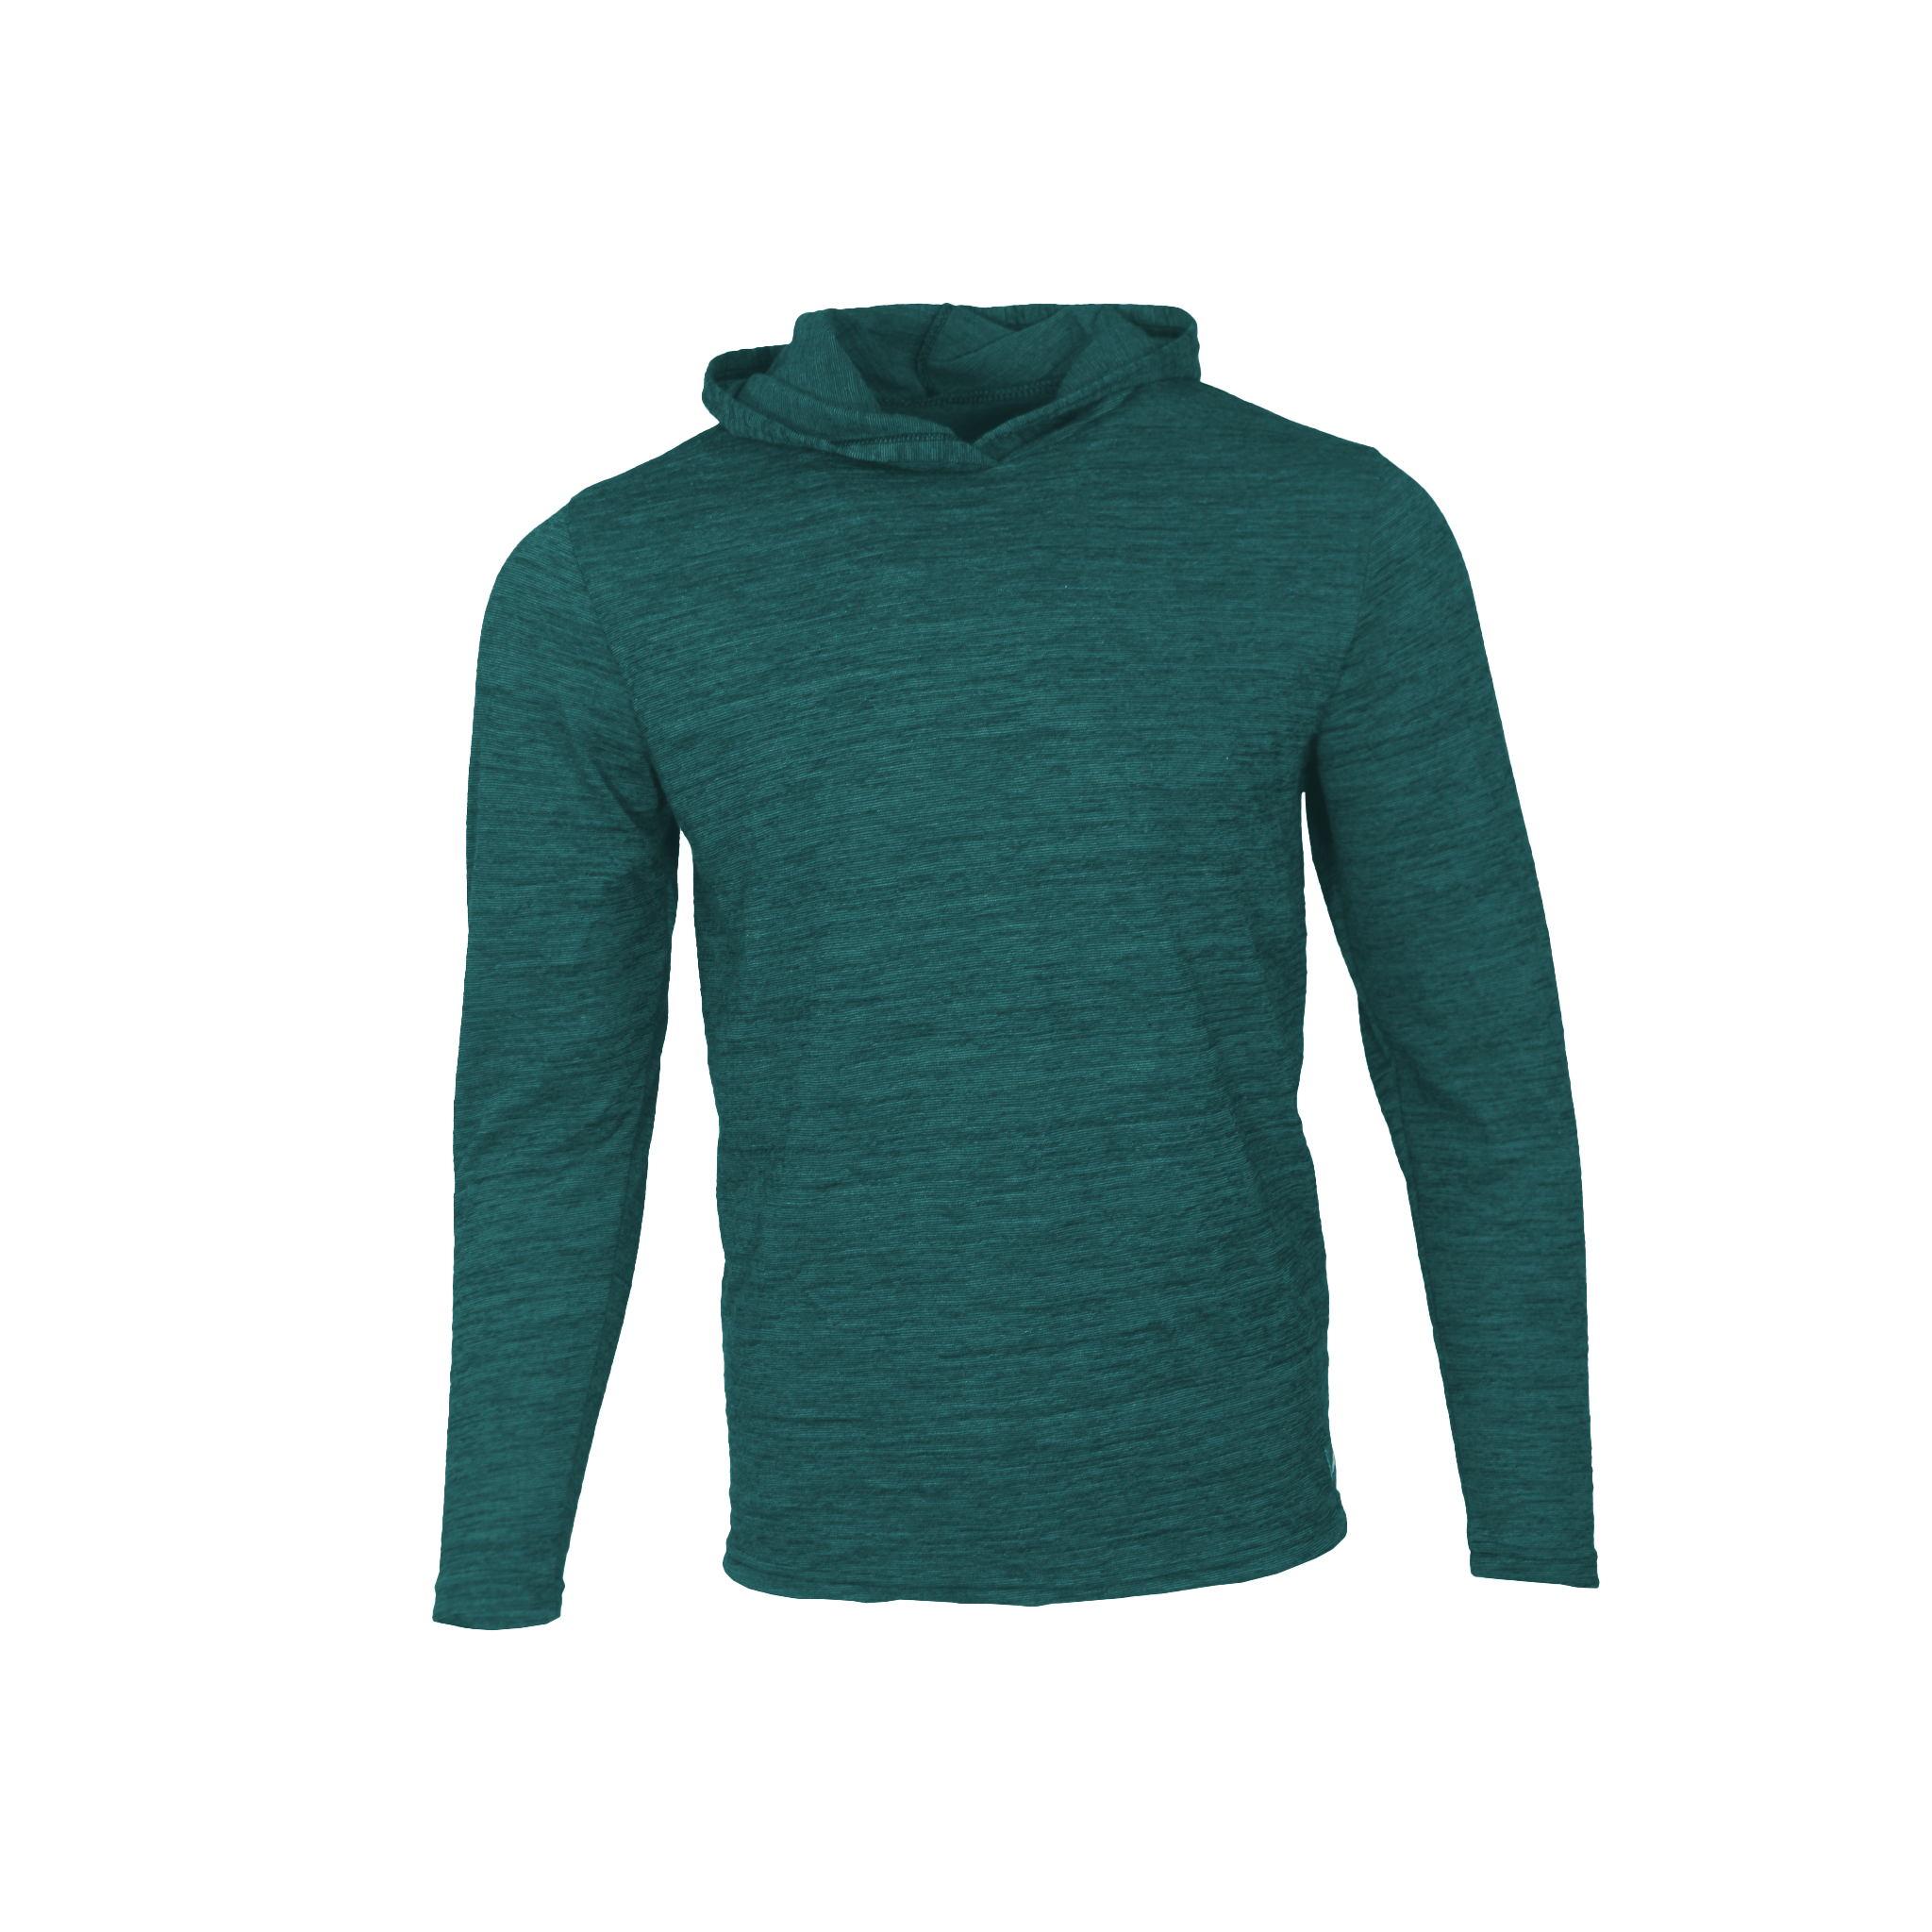 RTRDE Mens Hoodies, Sweatshirts Hoodies For Men With Designs